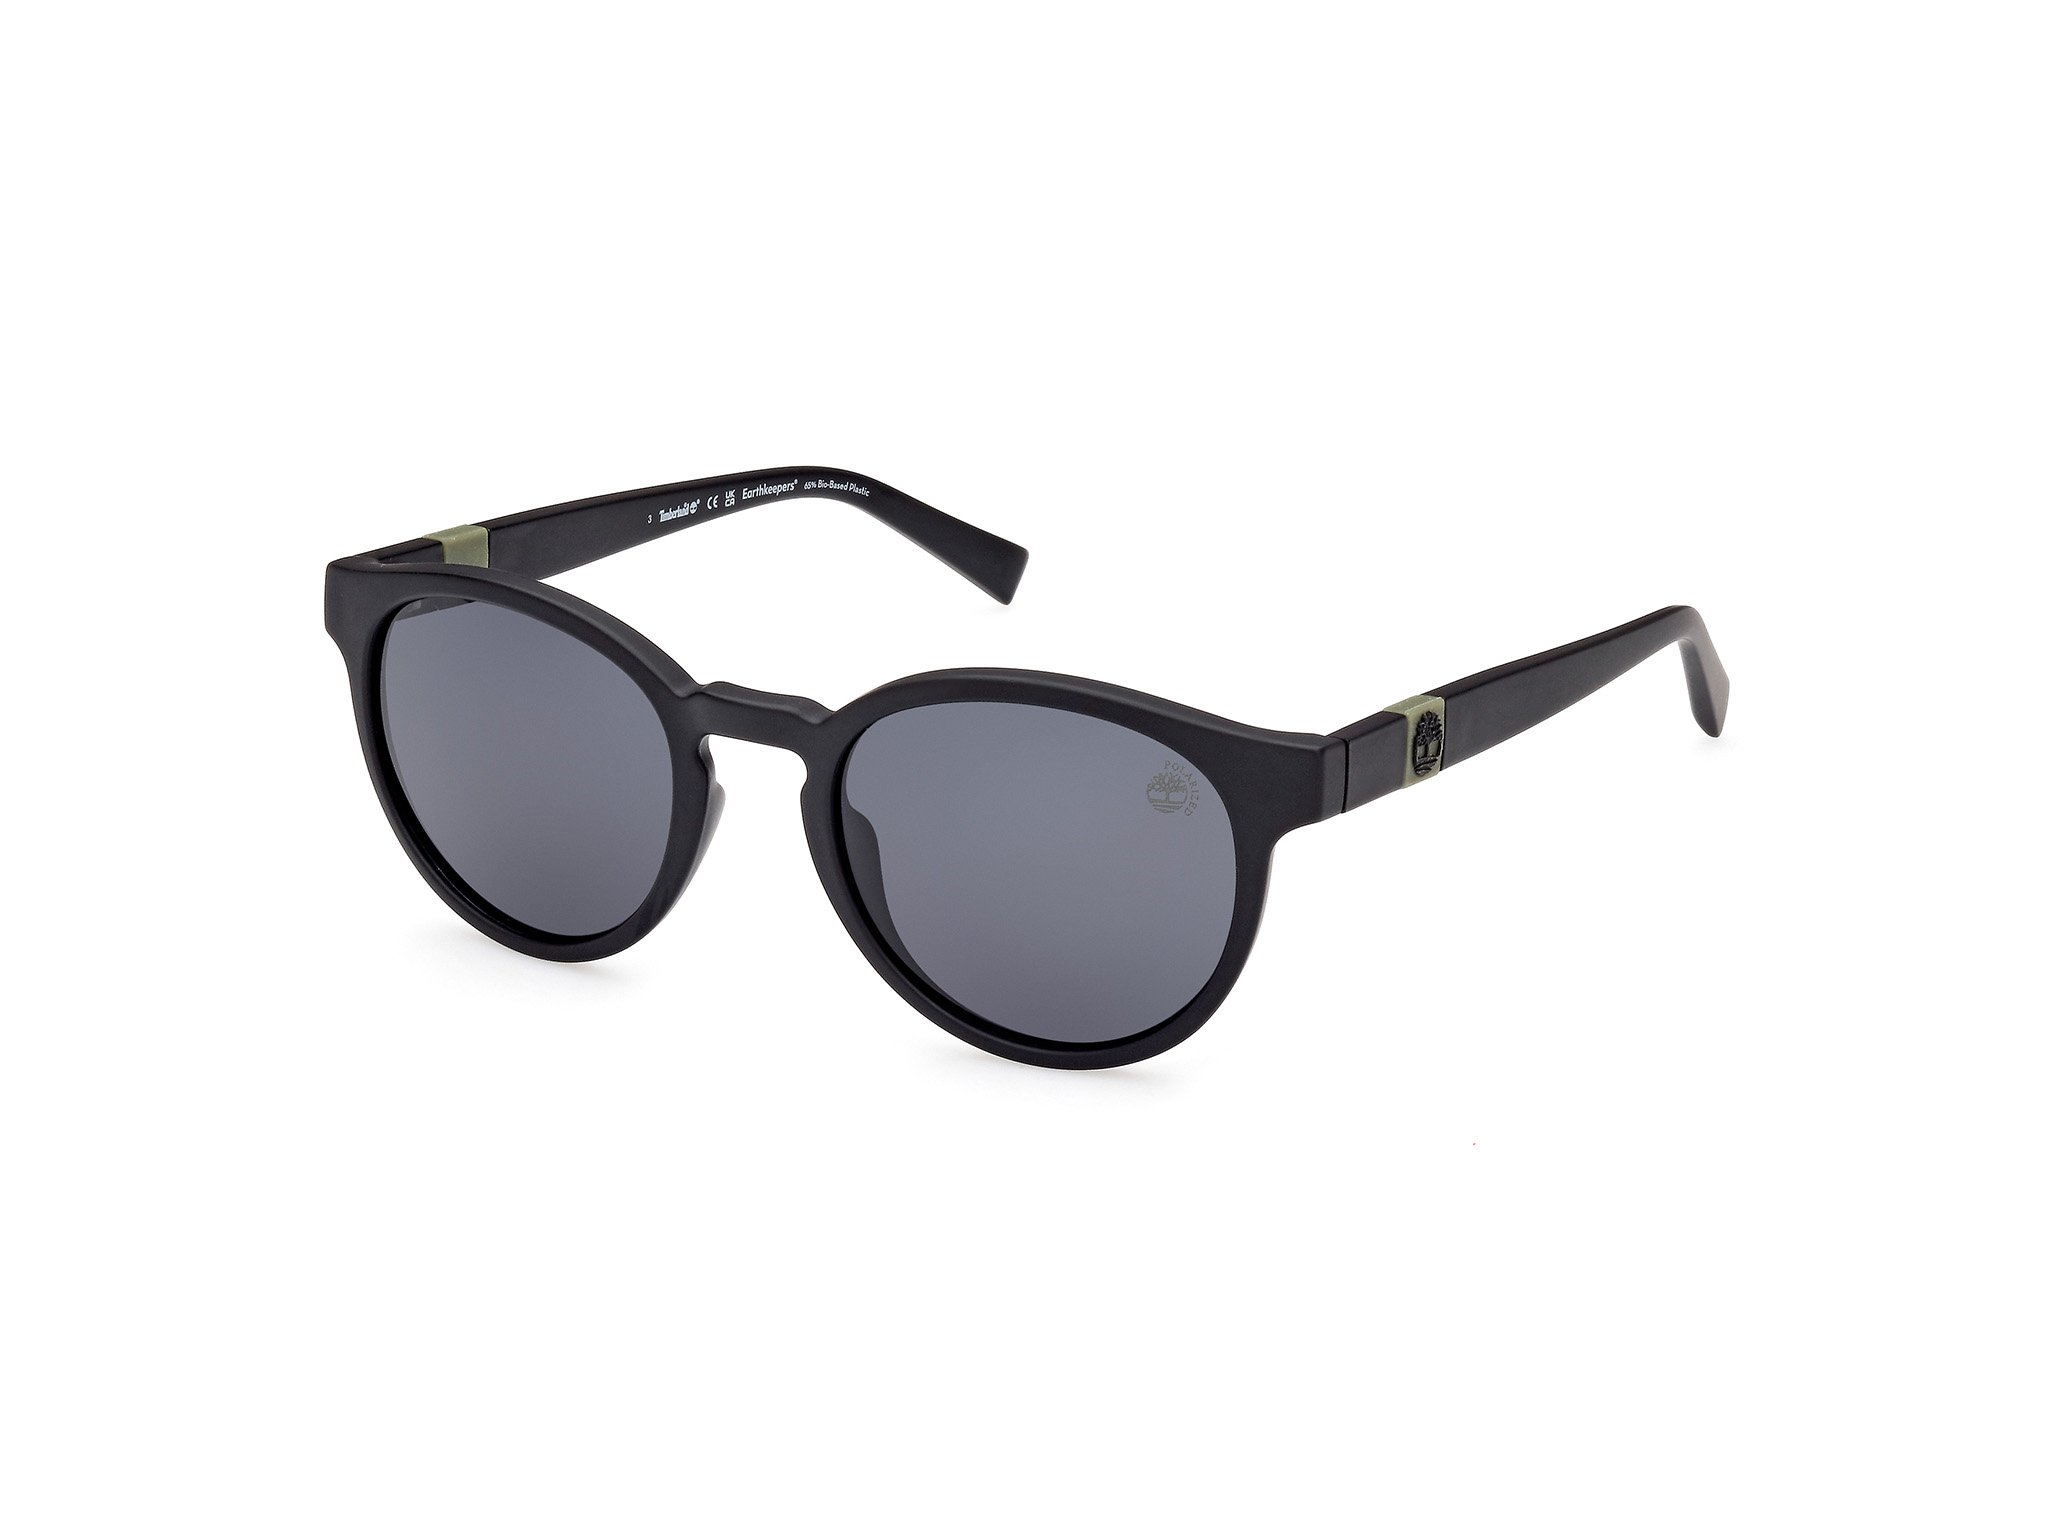 Das Bild zeigt die Sonnenbrille TB9323 02D von der Marke Guess in schwarz.